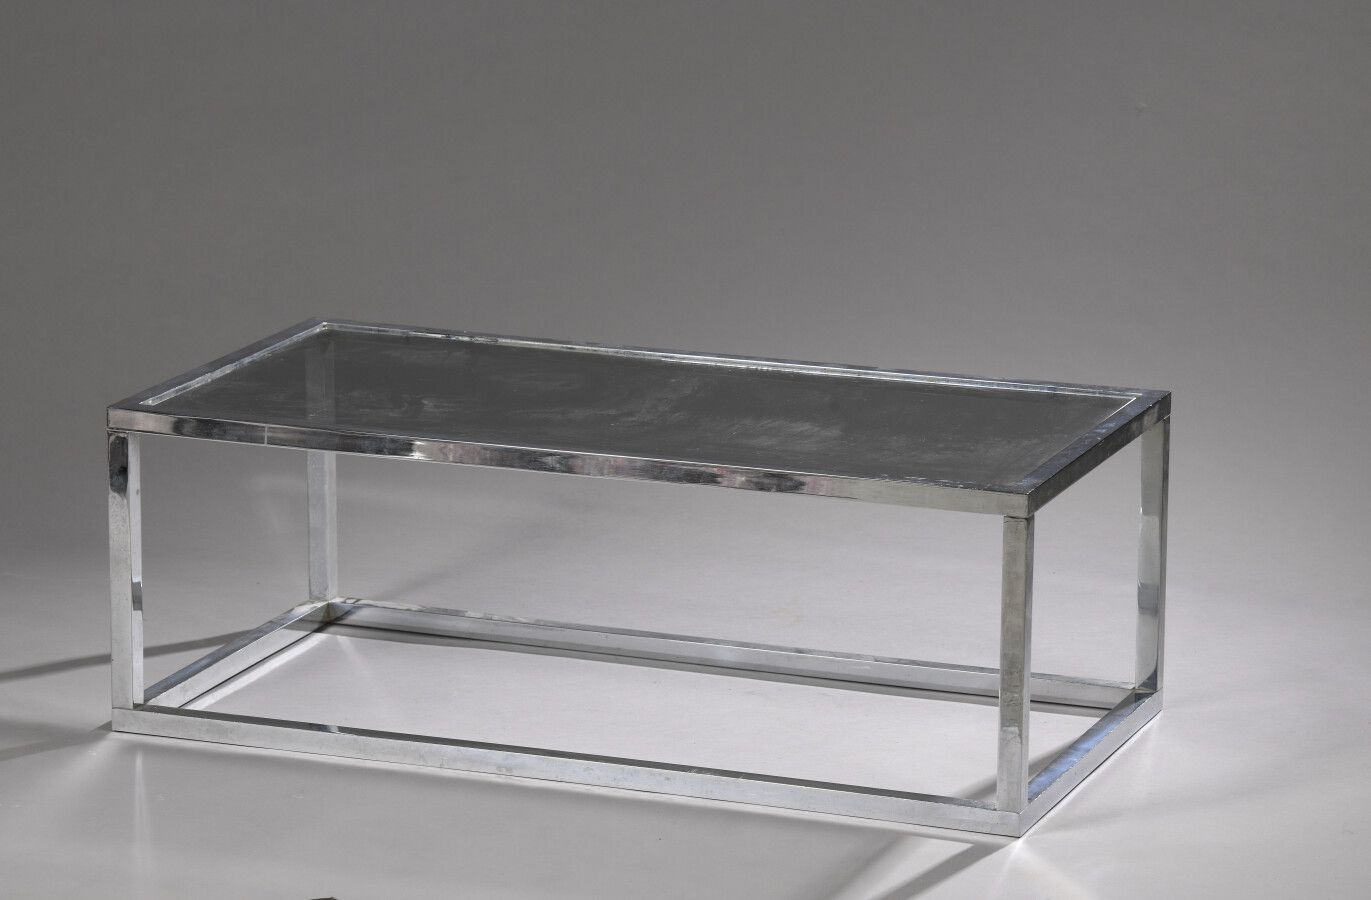 Null 1970年代的作品

长方形咖啡桌和一块沙发

方形截面的镀铬管状金属样板

烟熏玻璃面板

H.35 cm - D. 100 cm - L. 50 &hellip;